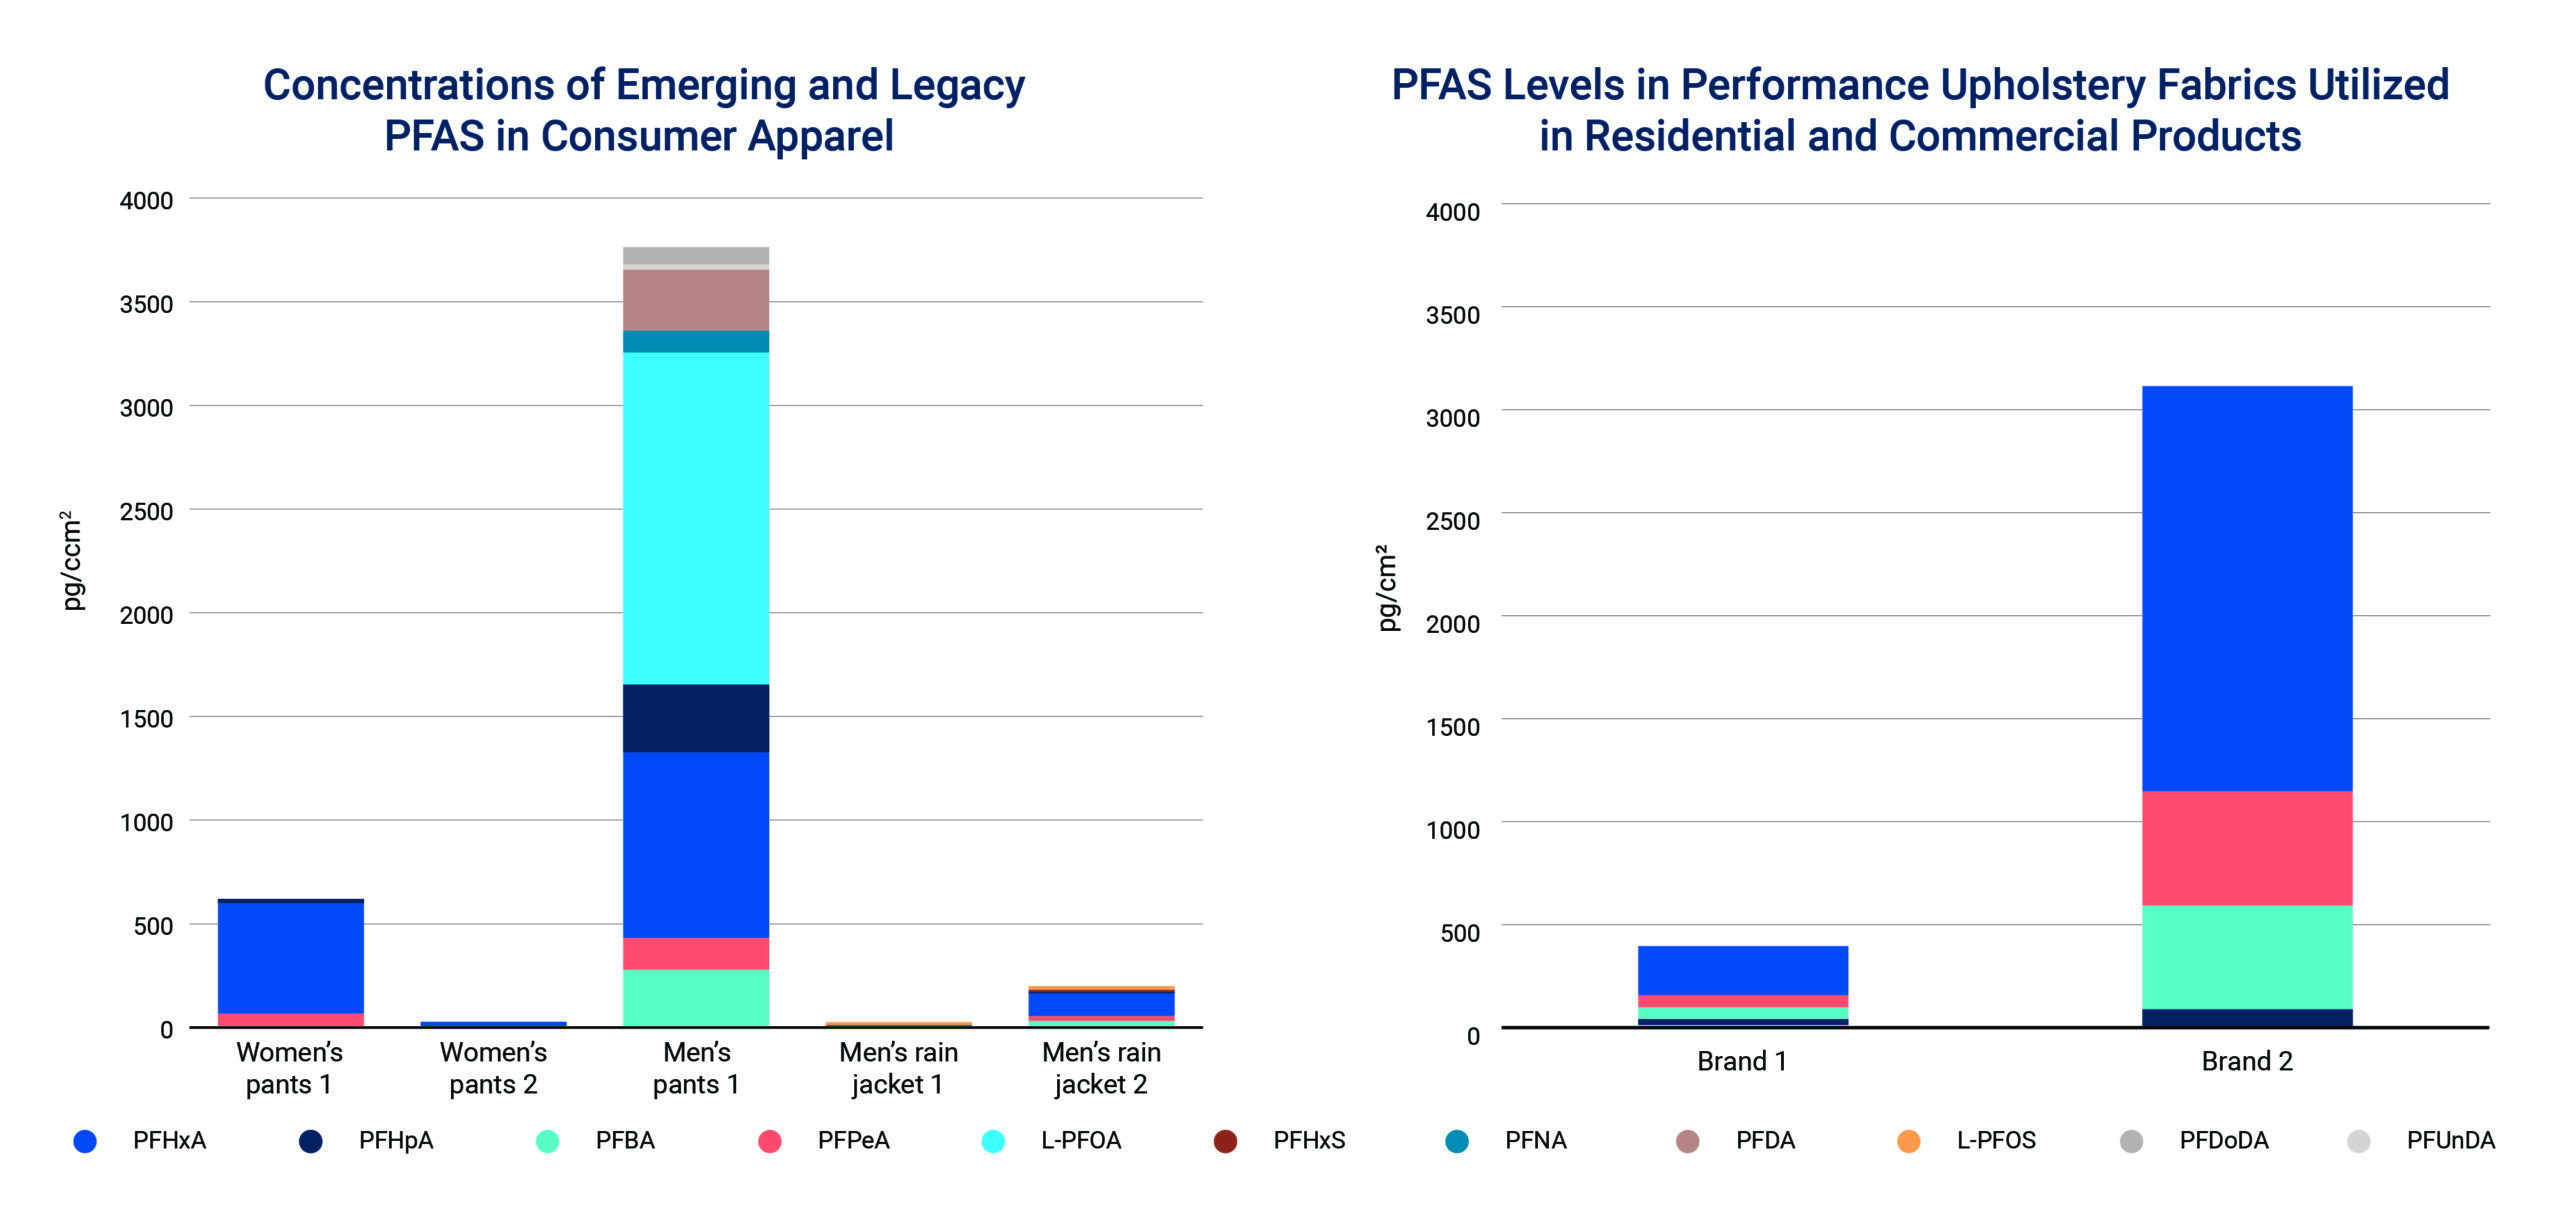 PFAS levels detected